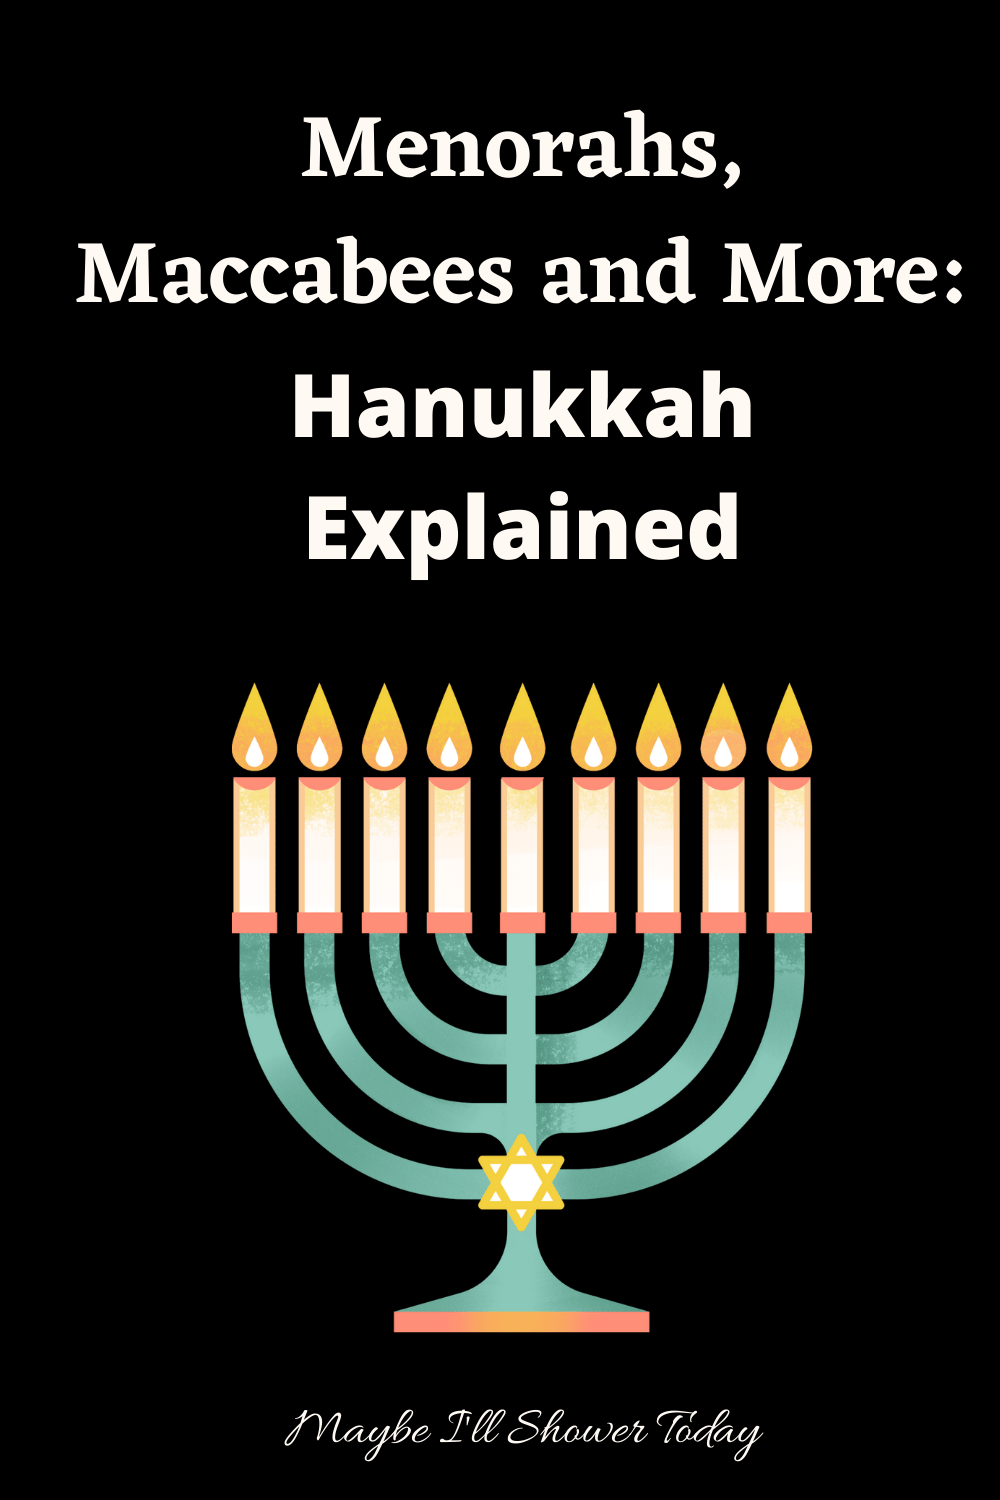 menorah vs hanukiah